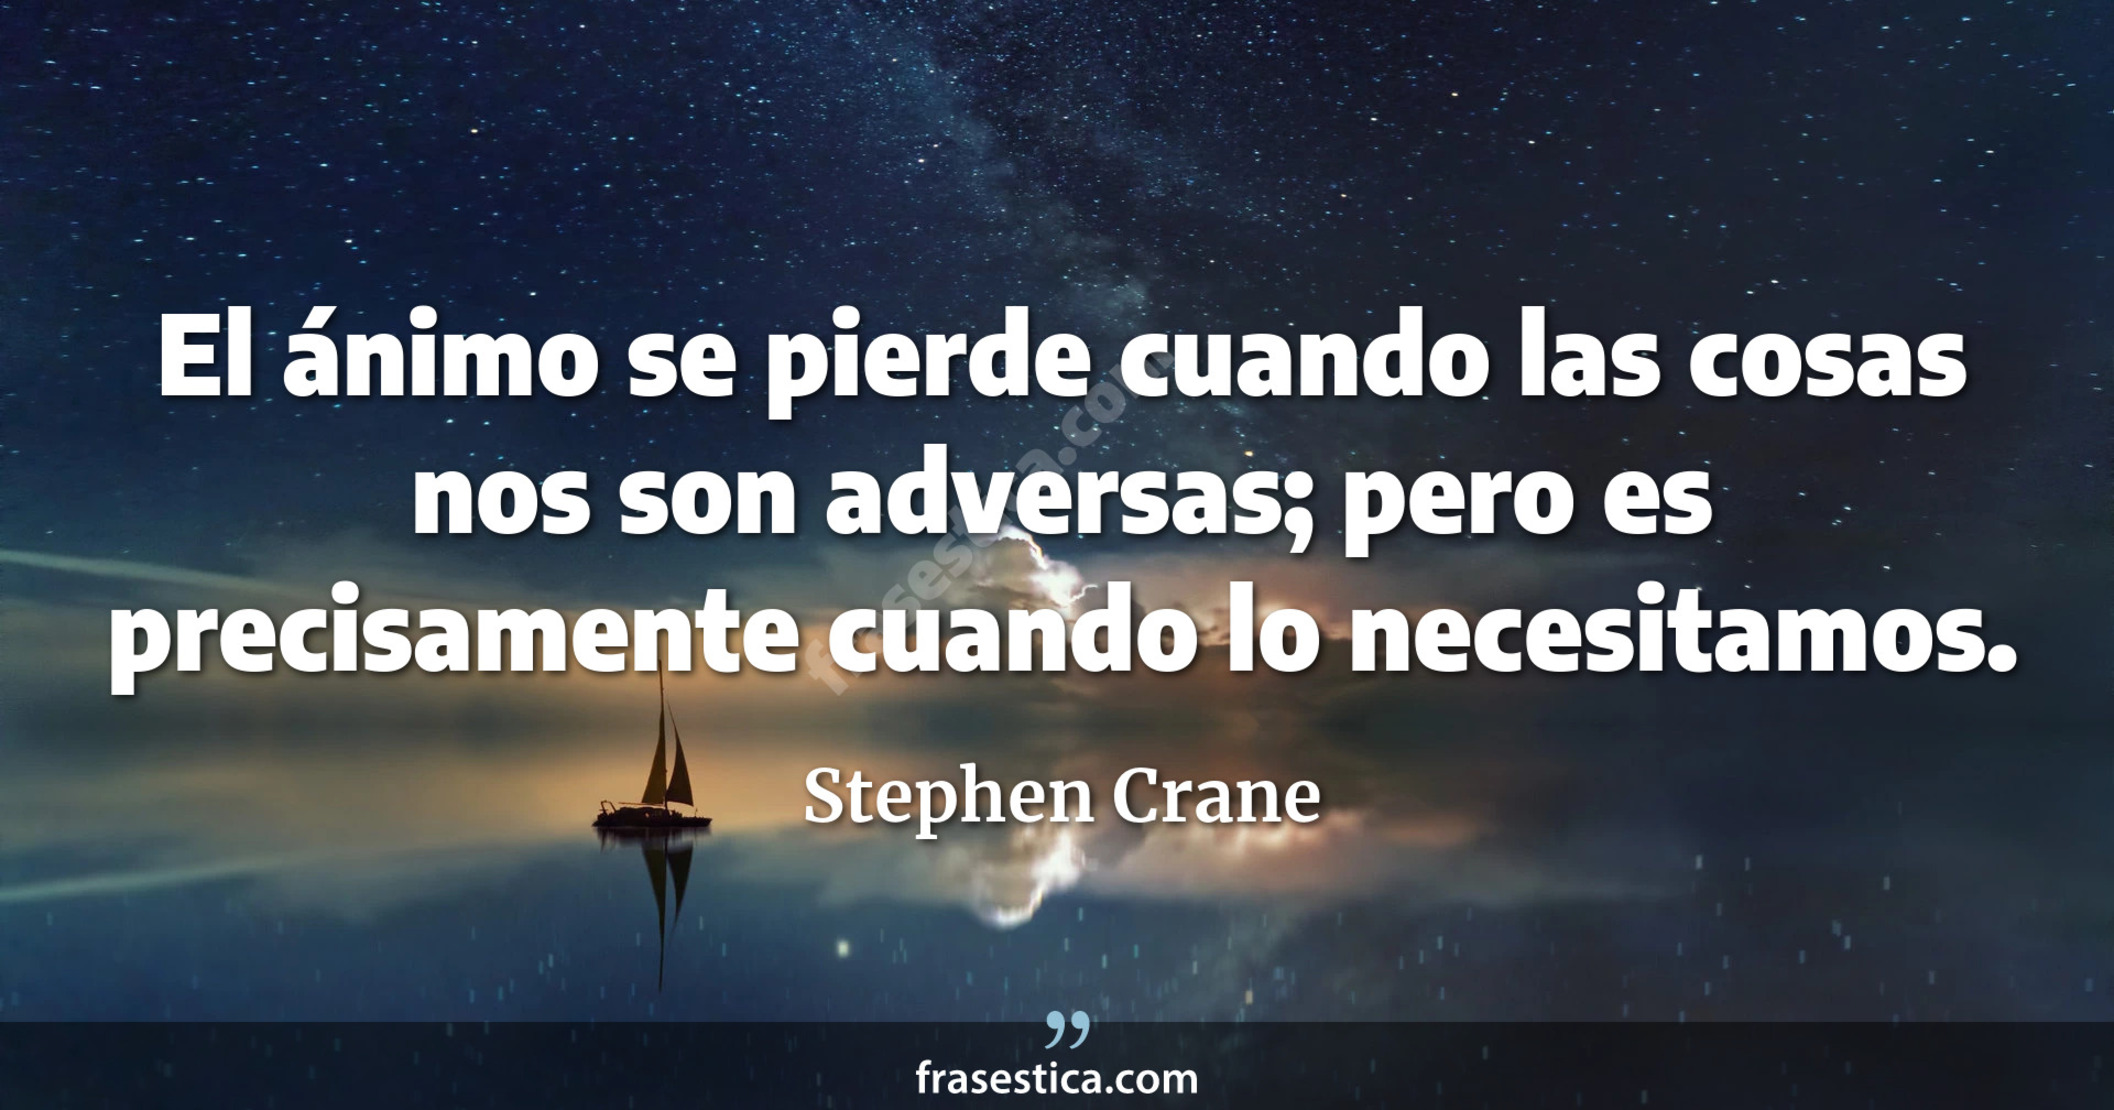 El ánimo se pierde cuando las cosas nos son adversas; pero es precisamente cuando lo necesitamos. - Stephen Crane